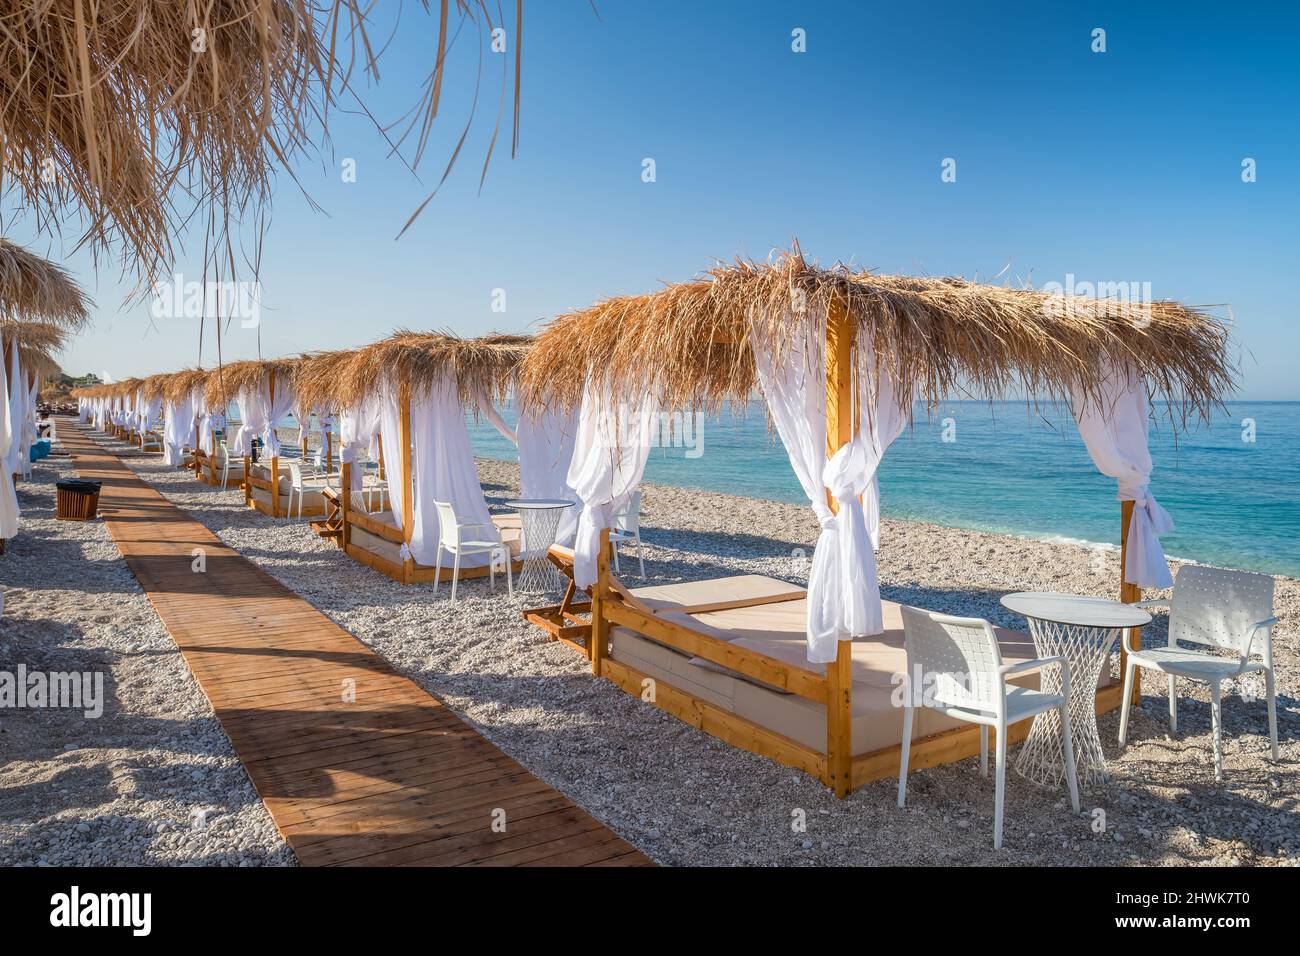 Lits de plage à baldaquin avec rideaux blancs sur une plage vide en été. Banque D'Images